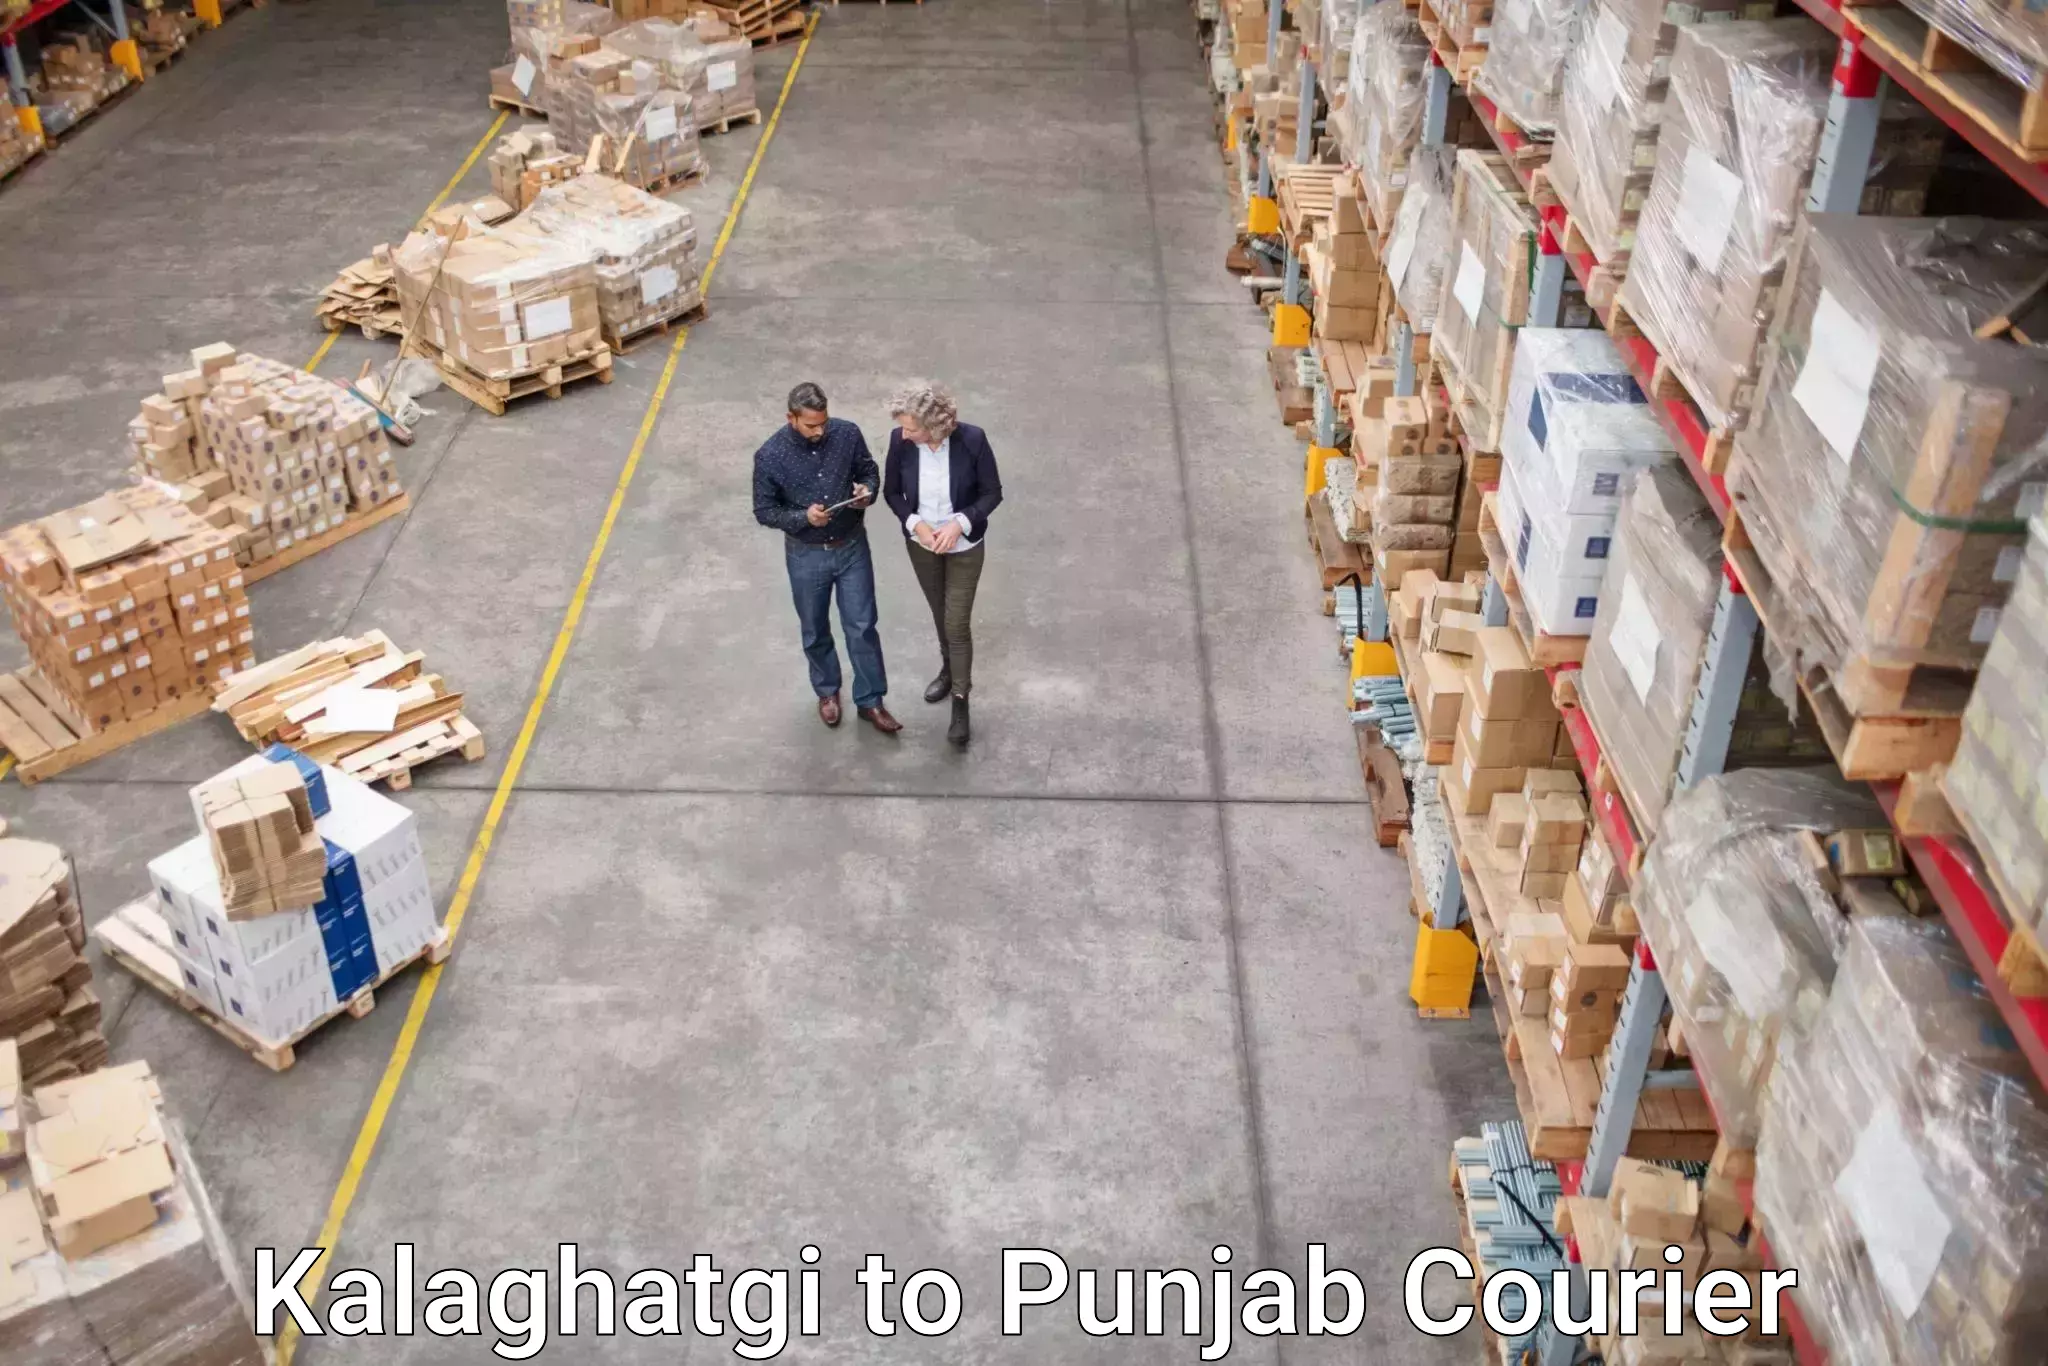 Efficient parcel delivery Kalaghatgi to Punjab